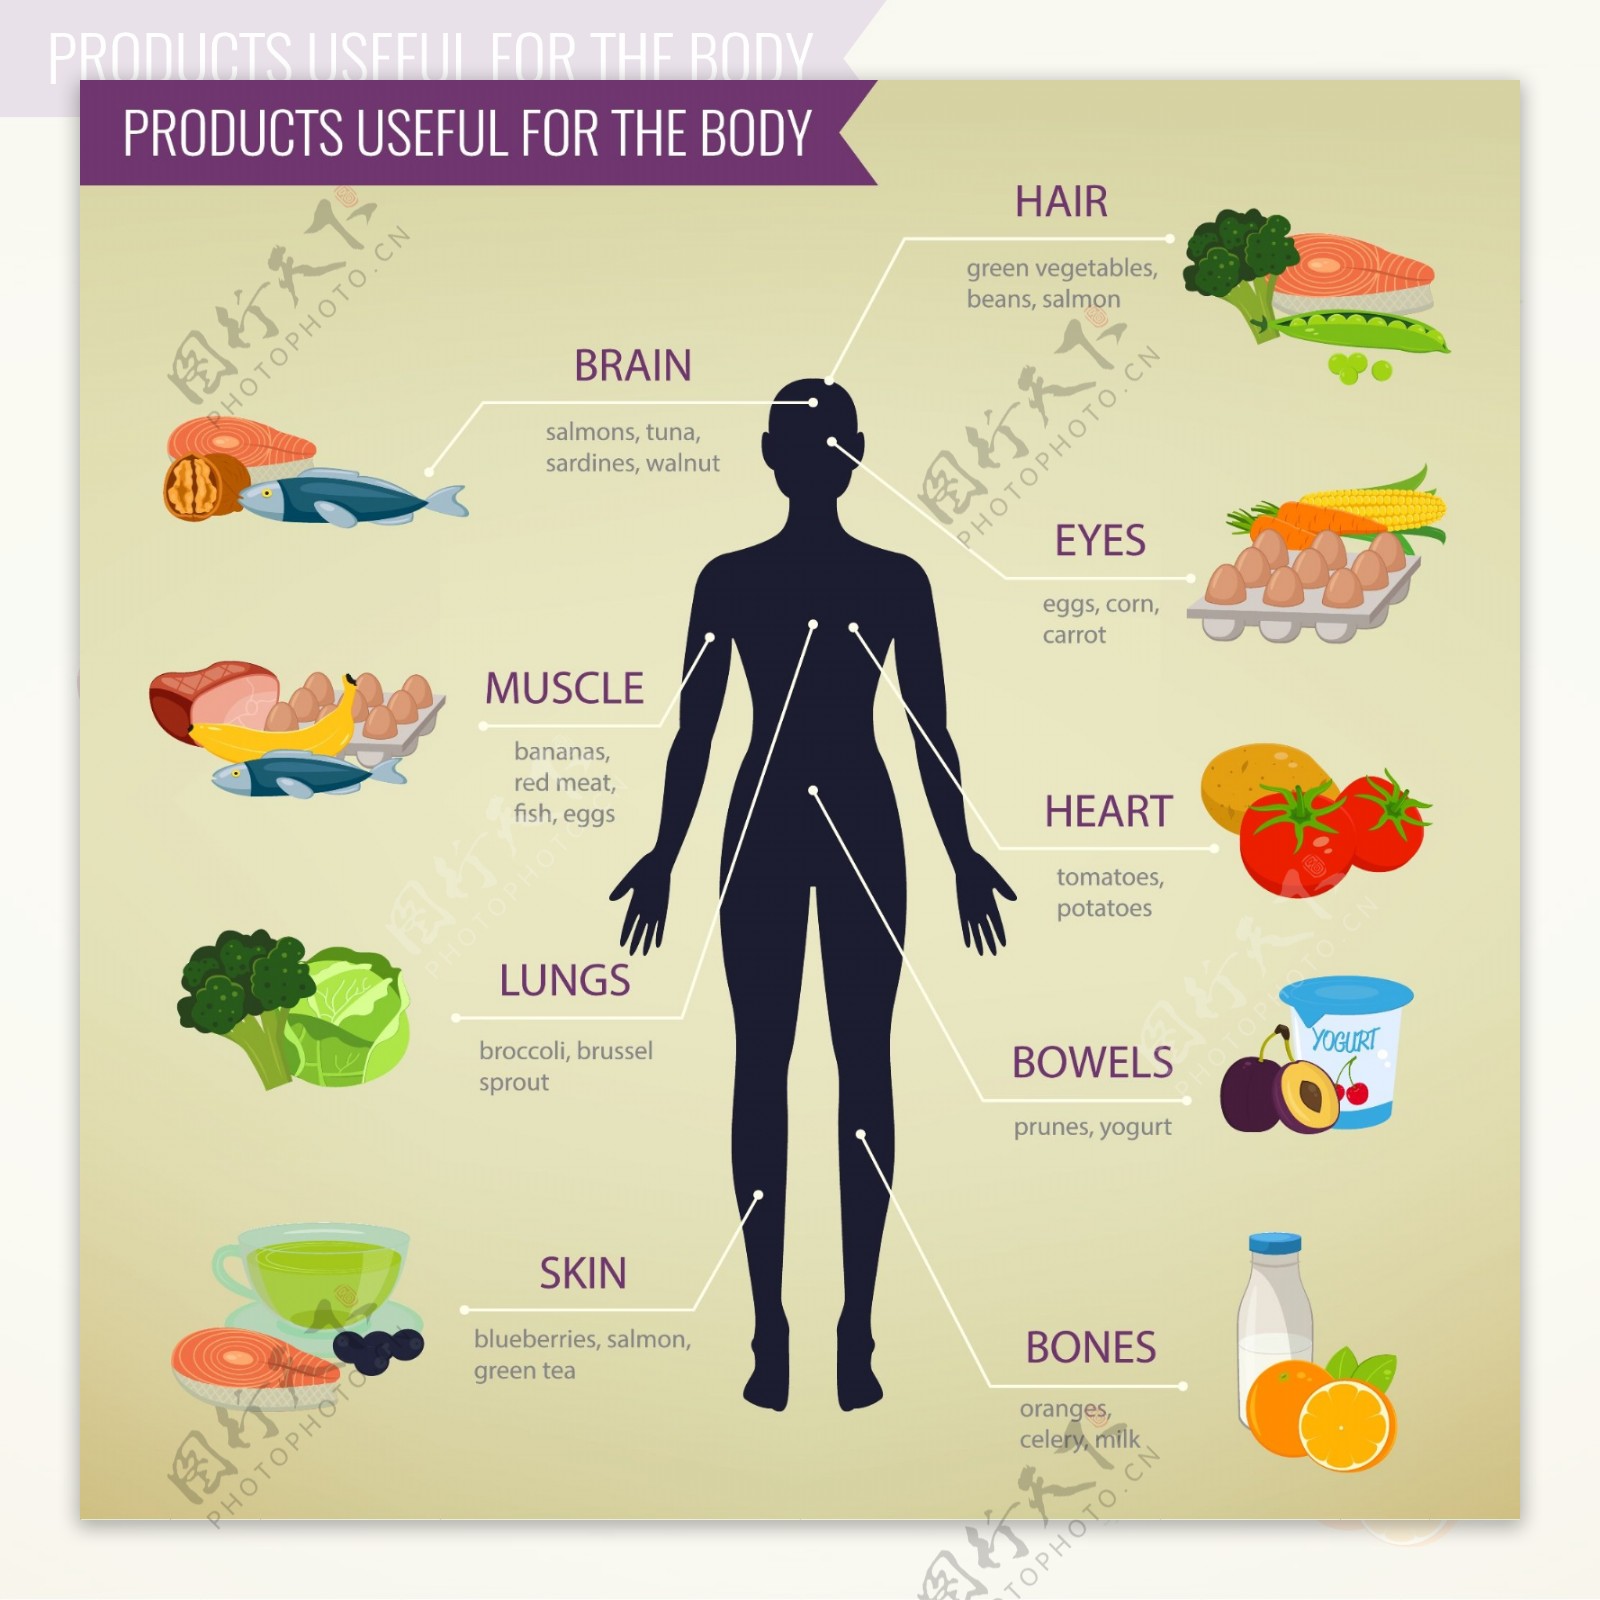 健康饮食分析图表